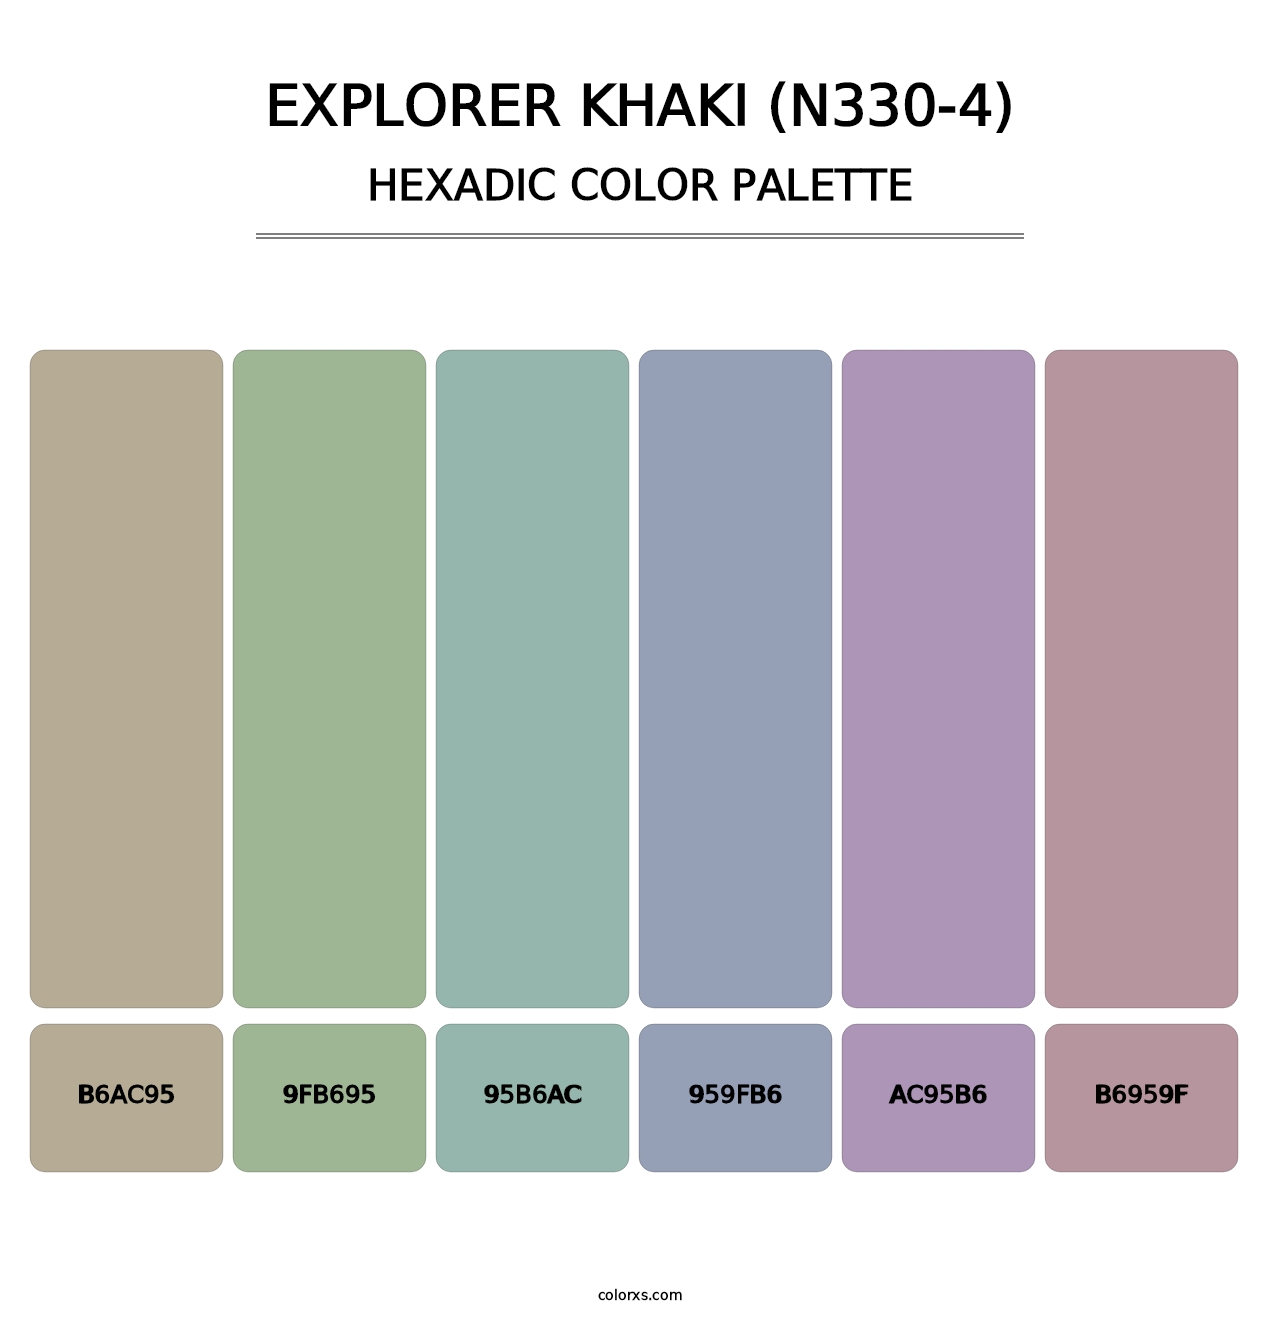 Explorer Khaki (N330-4) - Hexadic Color Palette